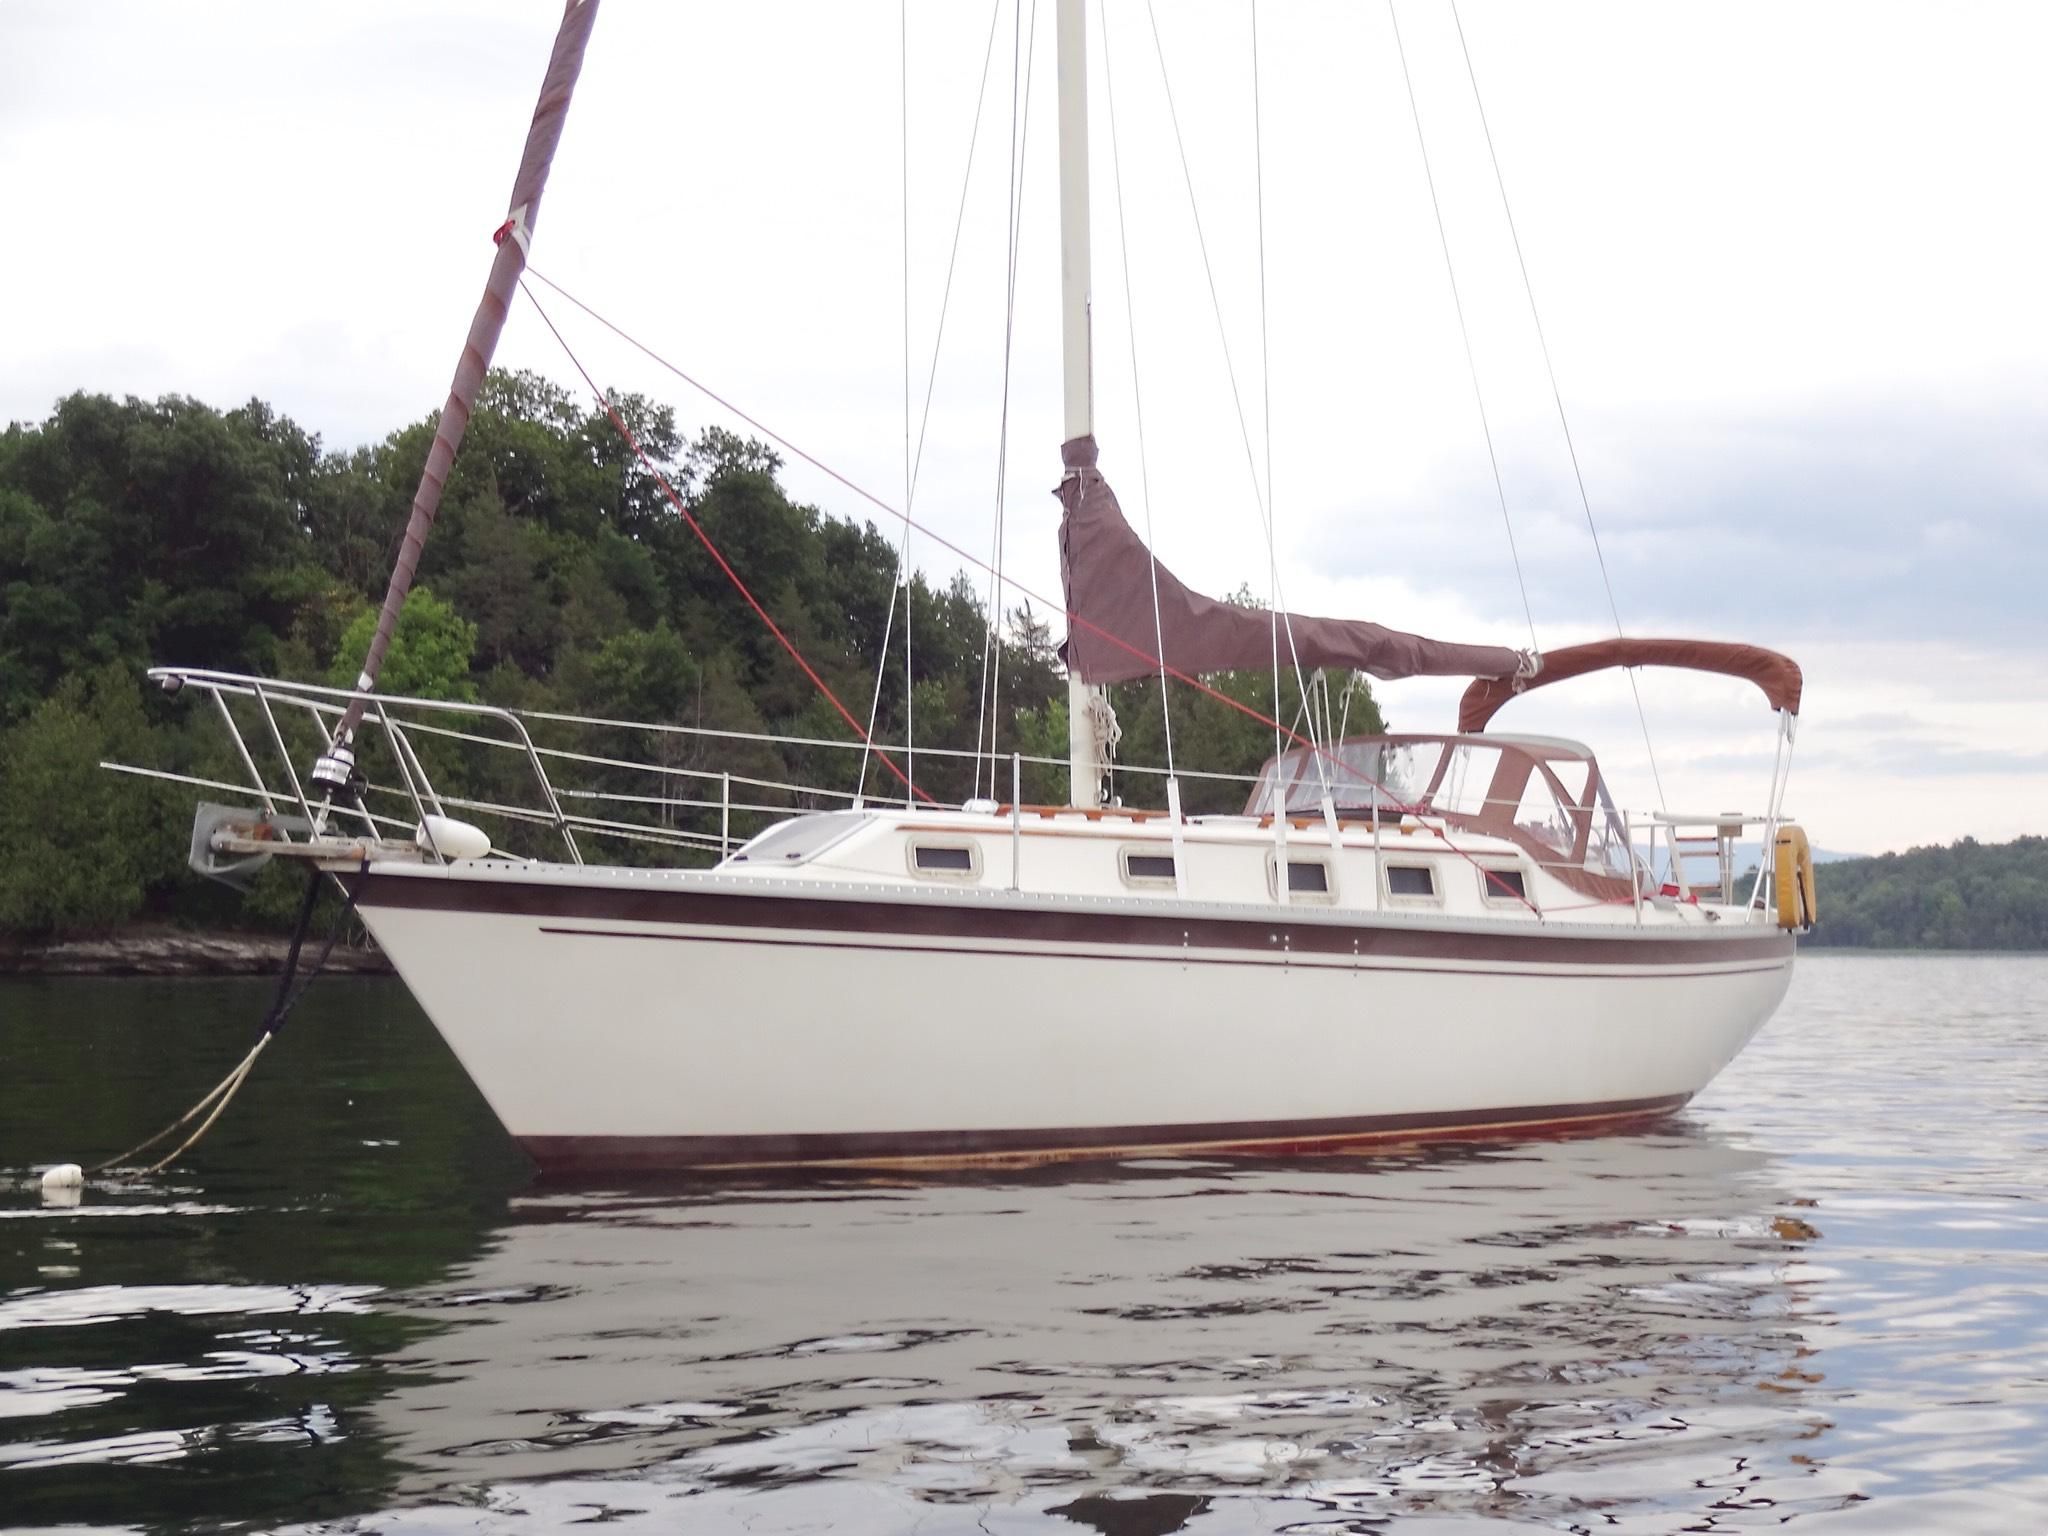 watkins 33 sailboat review